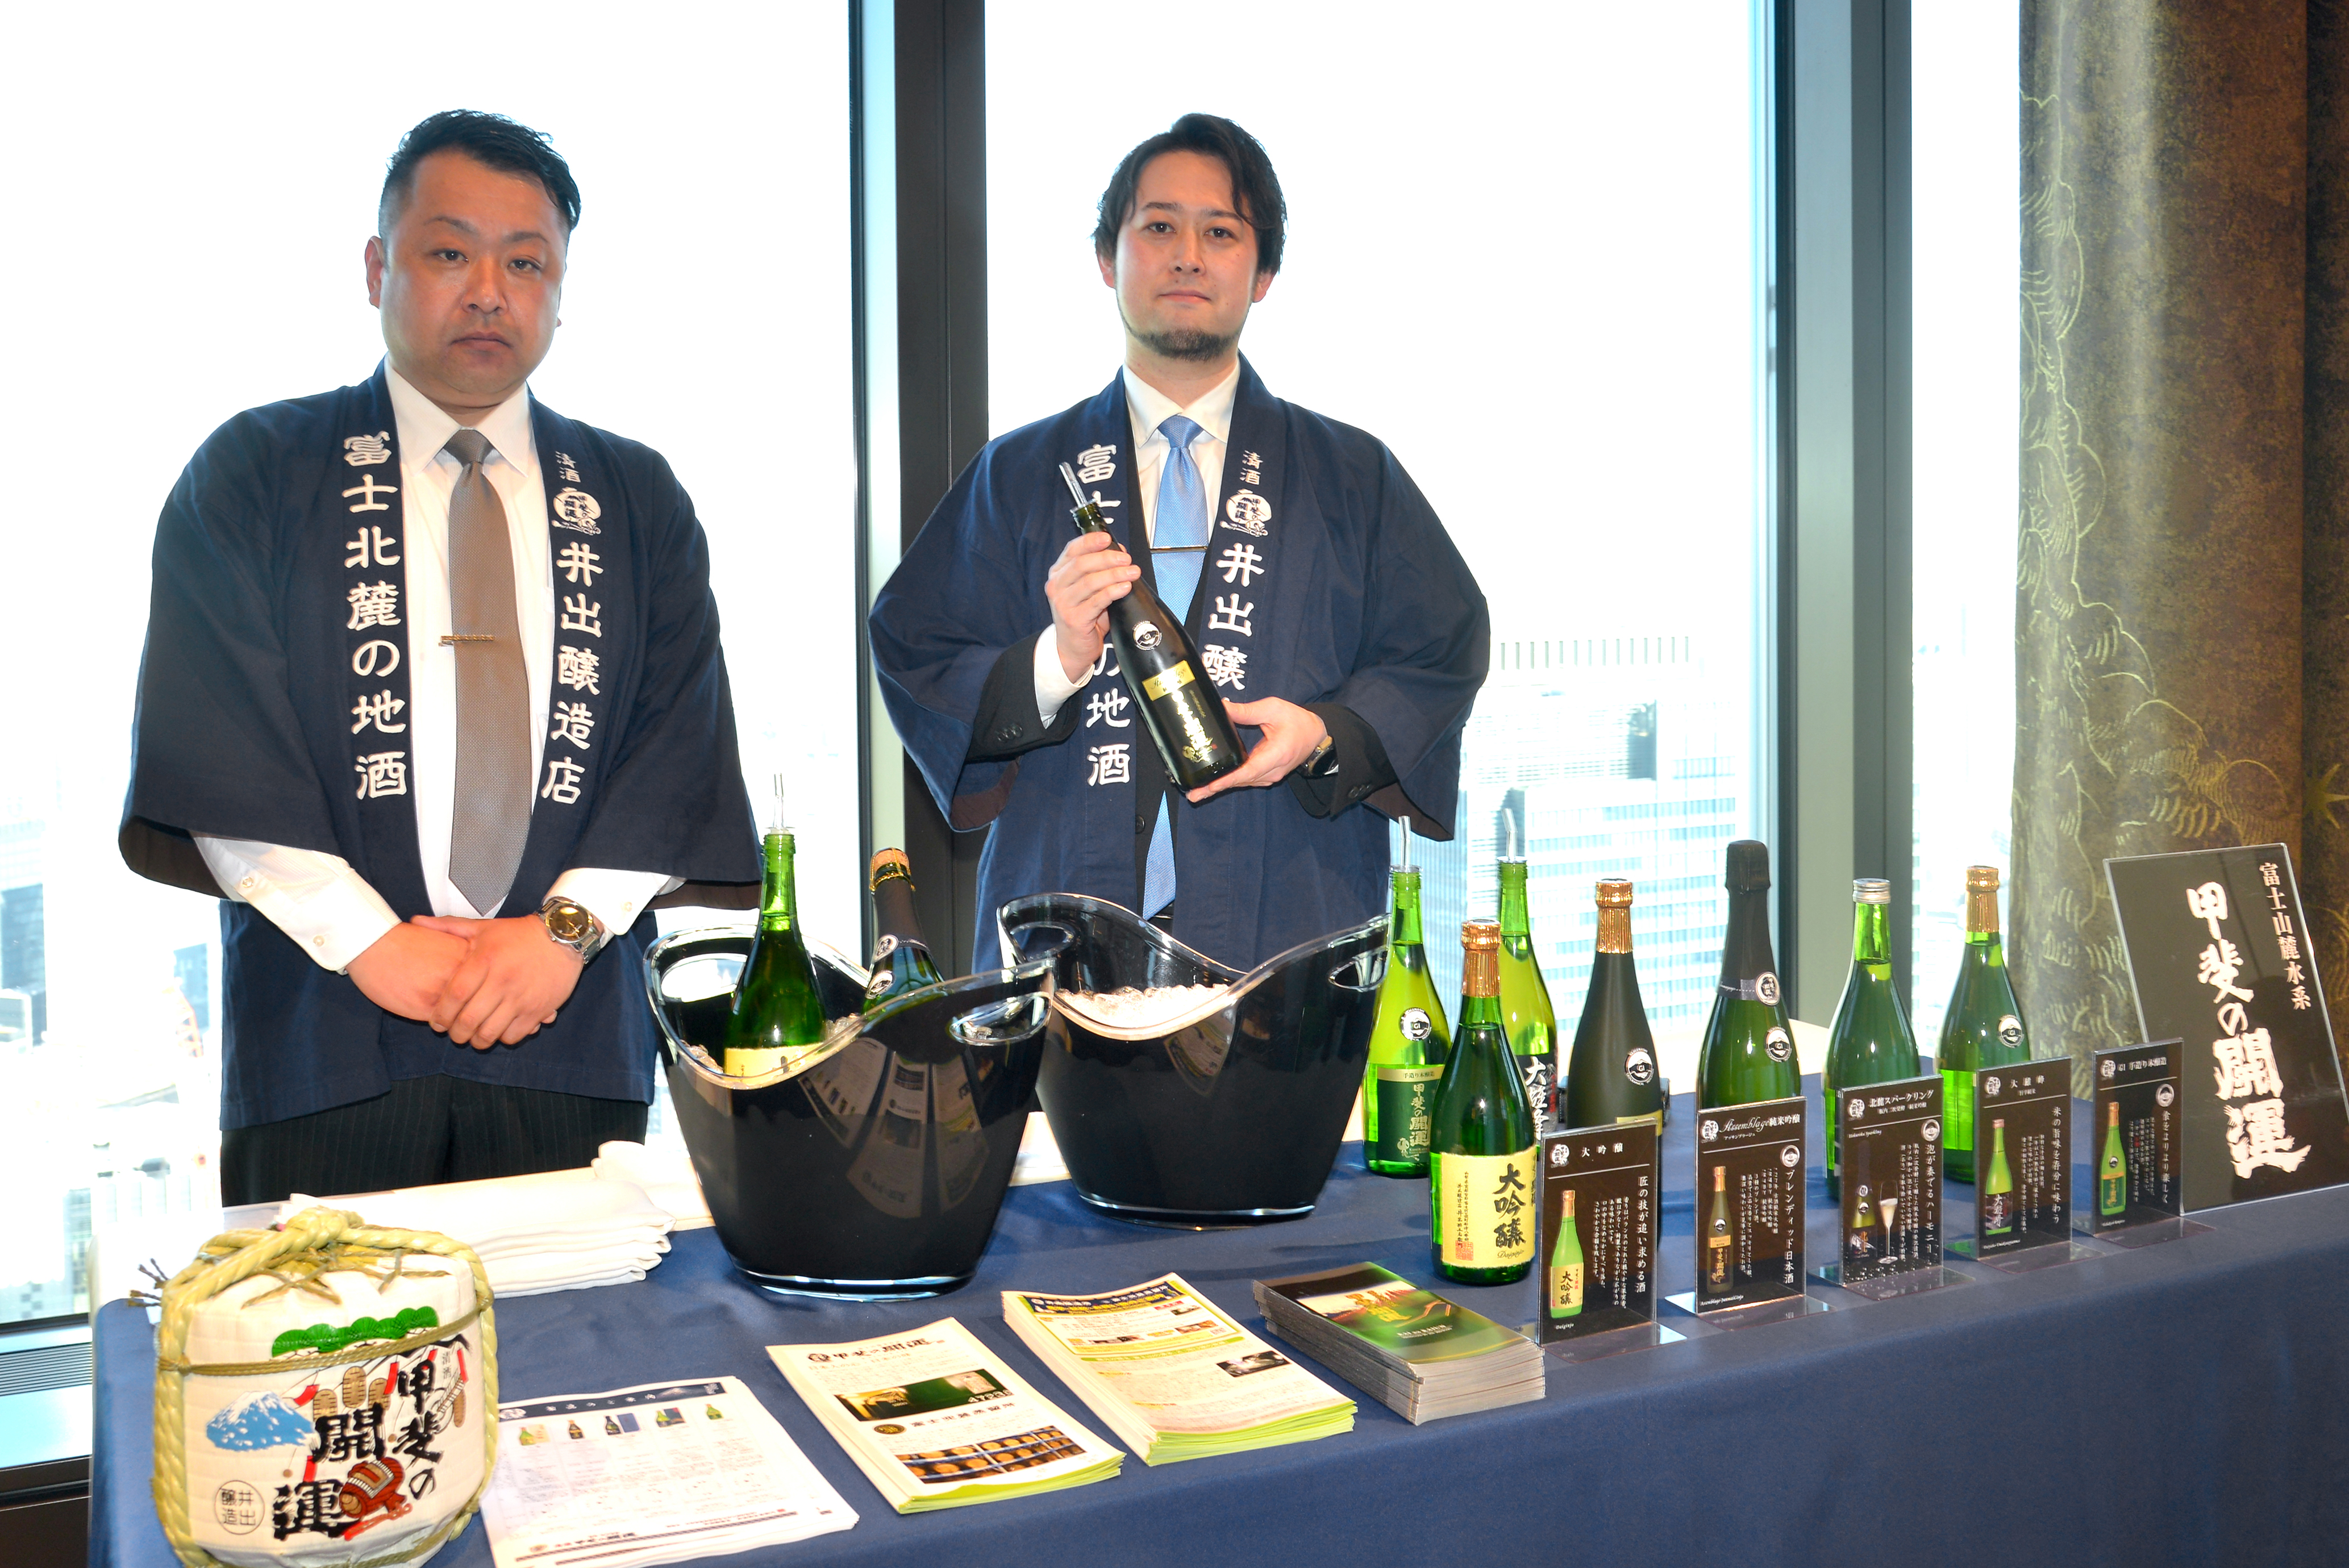 富士五湖地域で唯一の酒蔵で「甲斐の開運」を醸す井出醸造店